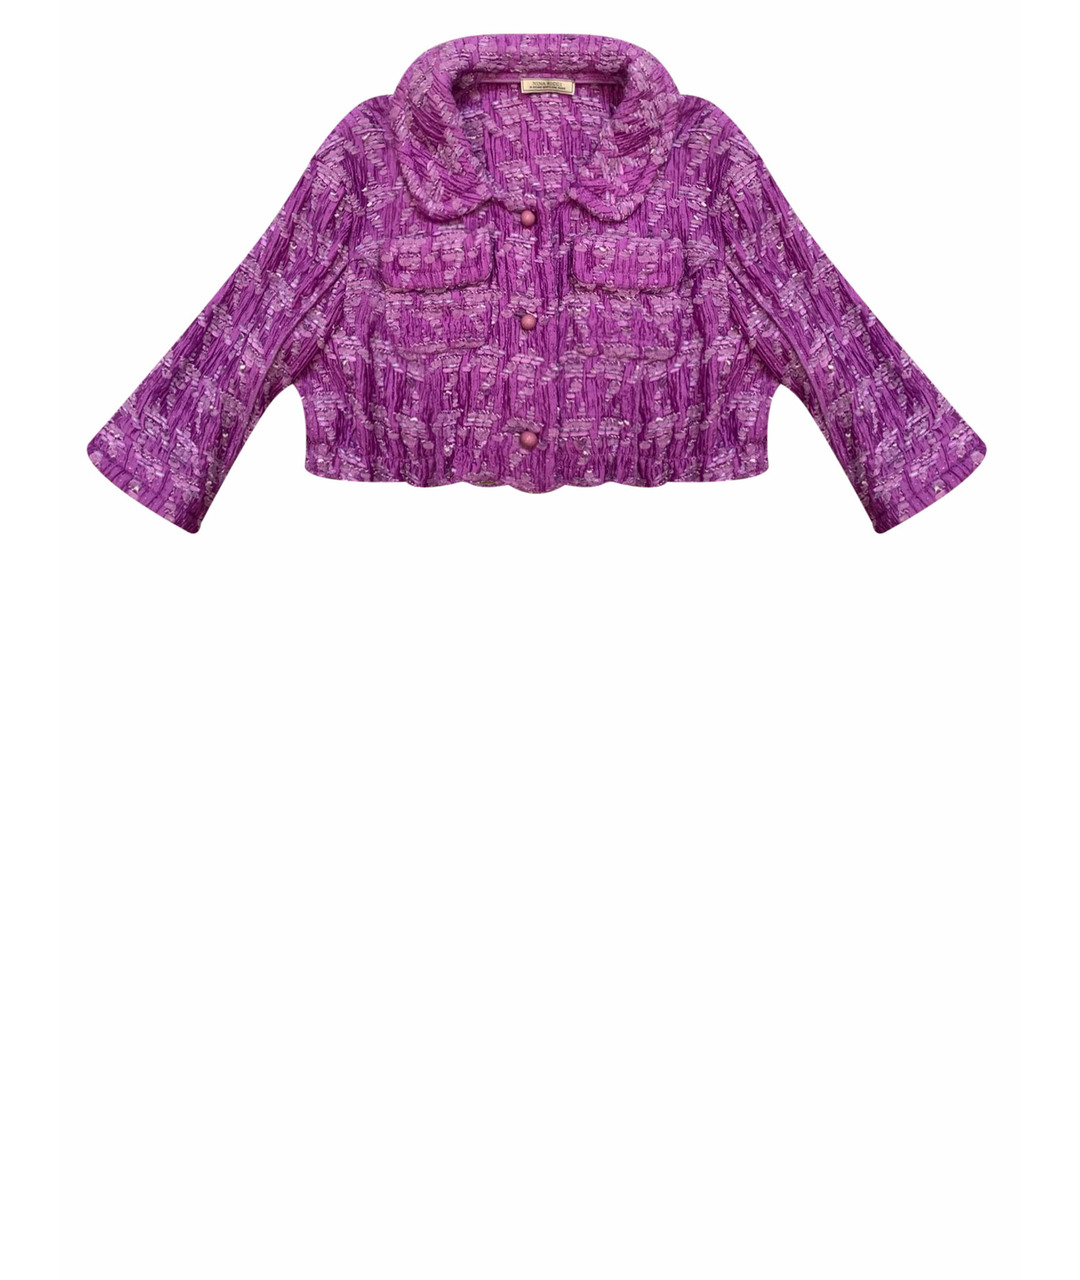 NINA RICCI PRE-OWNED Фиолетовый полиамидовый жакет/пиджак, фото 1